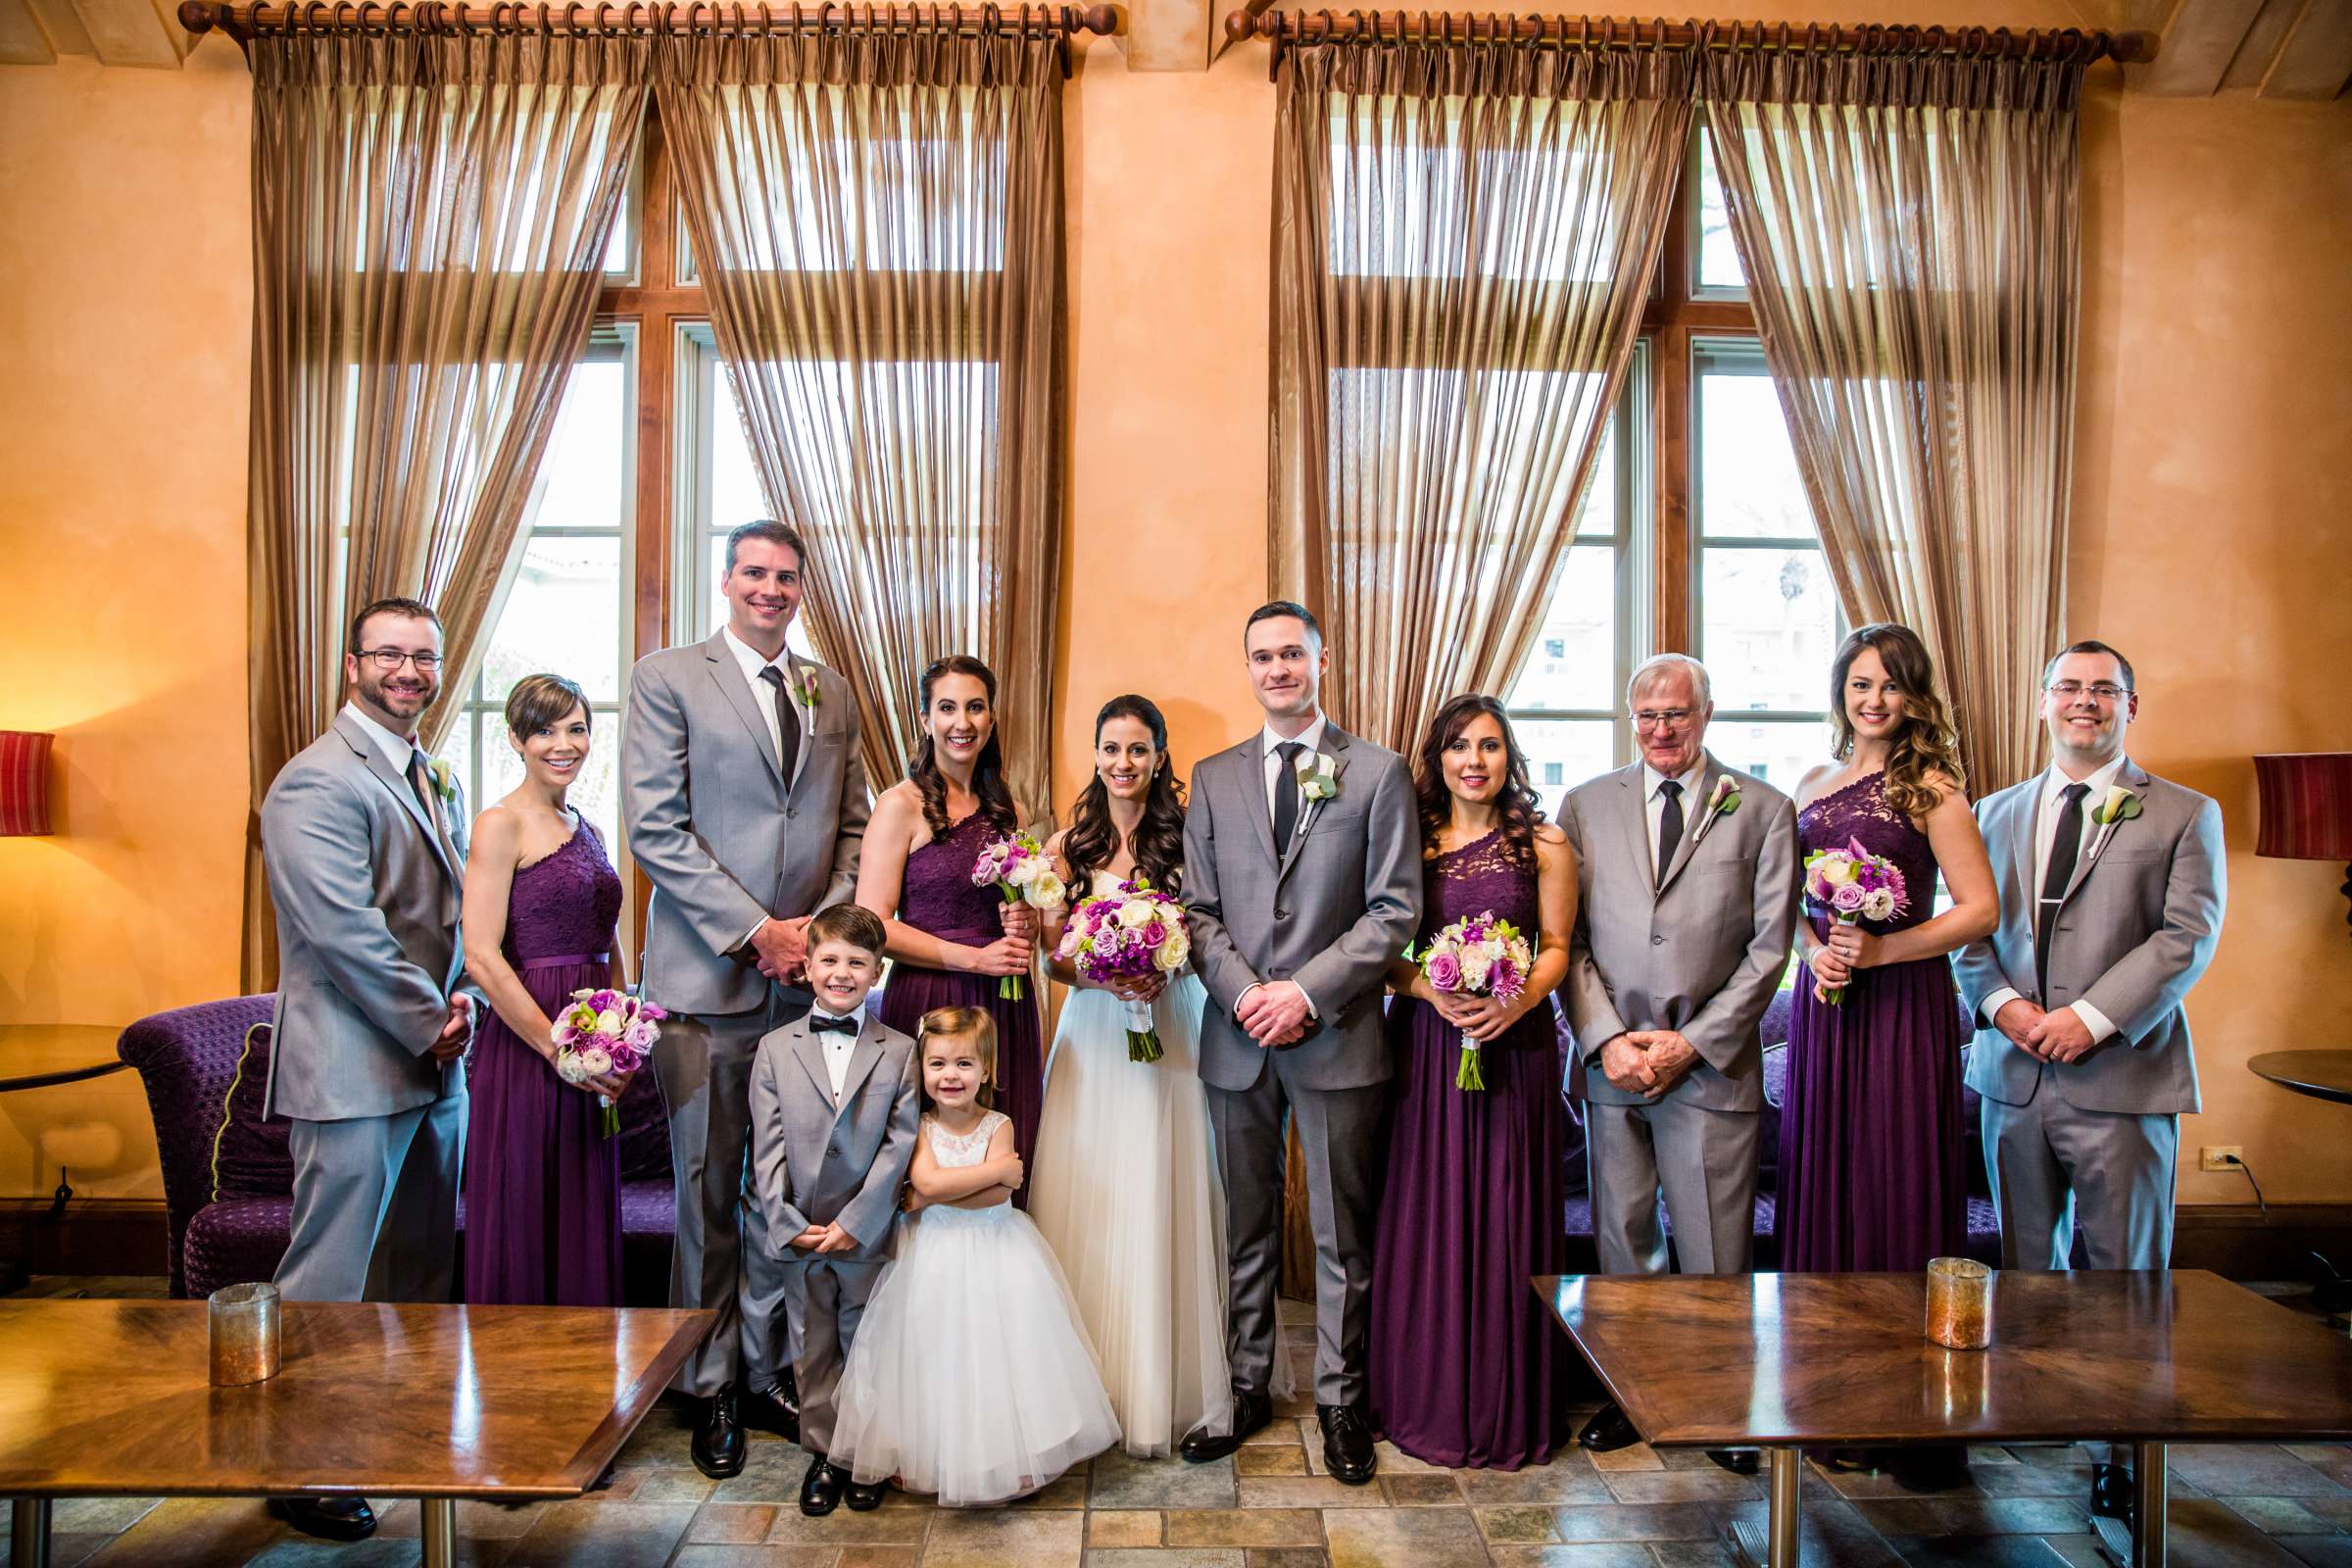 Park Hyatt Aviara Wedding, Jena and Keaton Wedding Photo #16 by True Photography